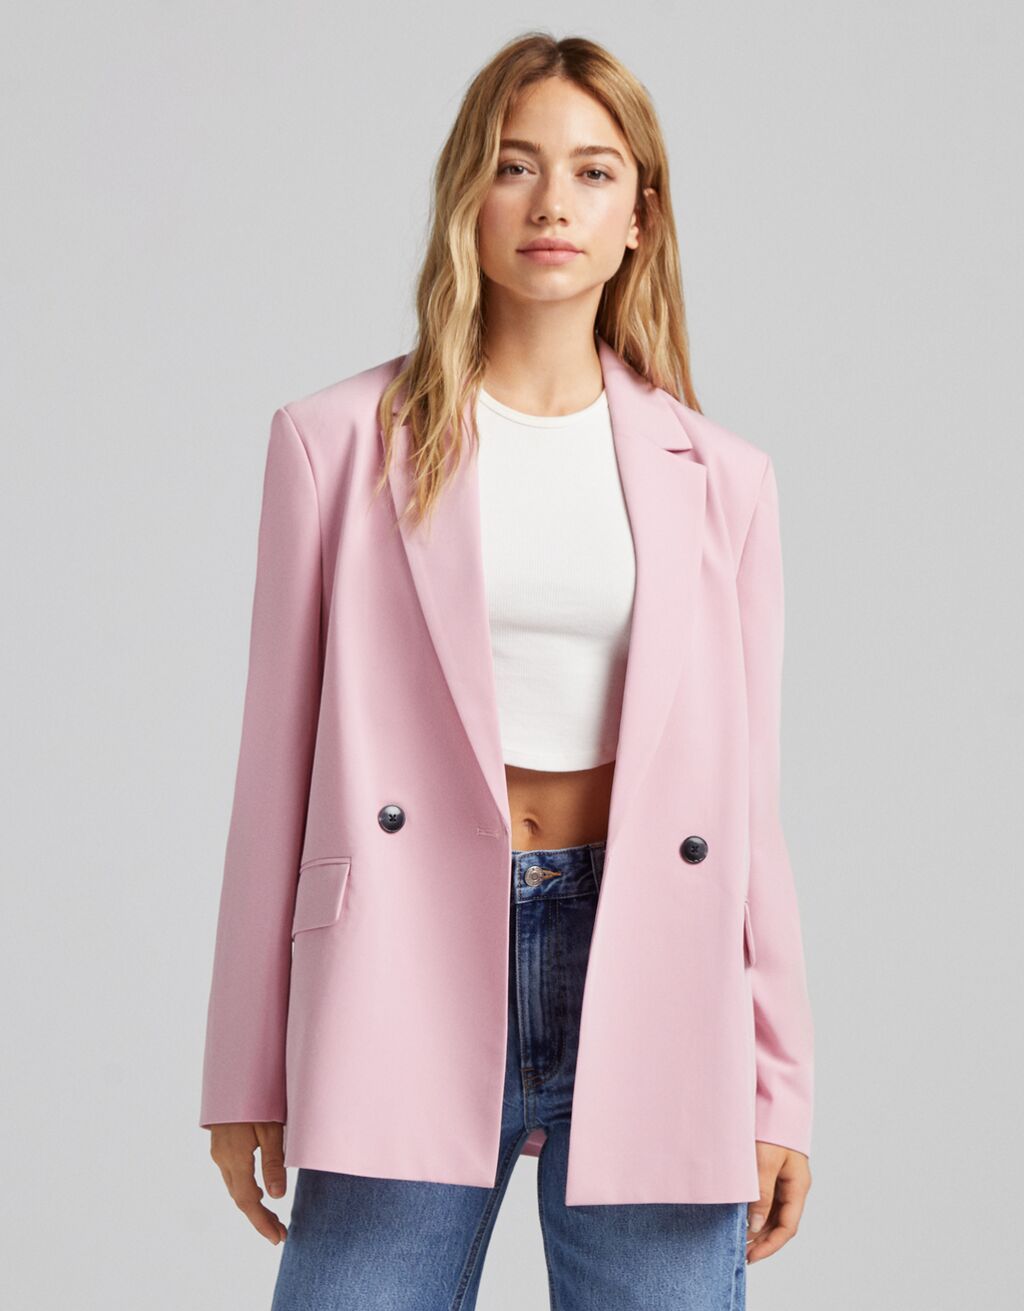 10 chaquetas de H&M, Zara y Cía. que serán súper tendencia este otoño 2021